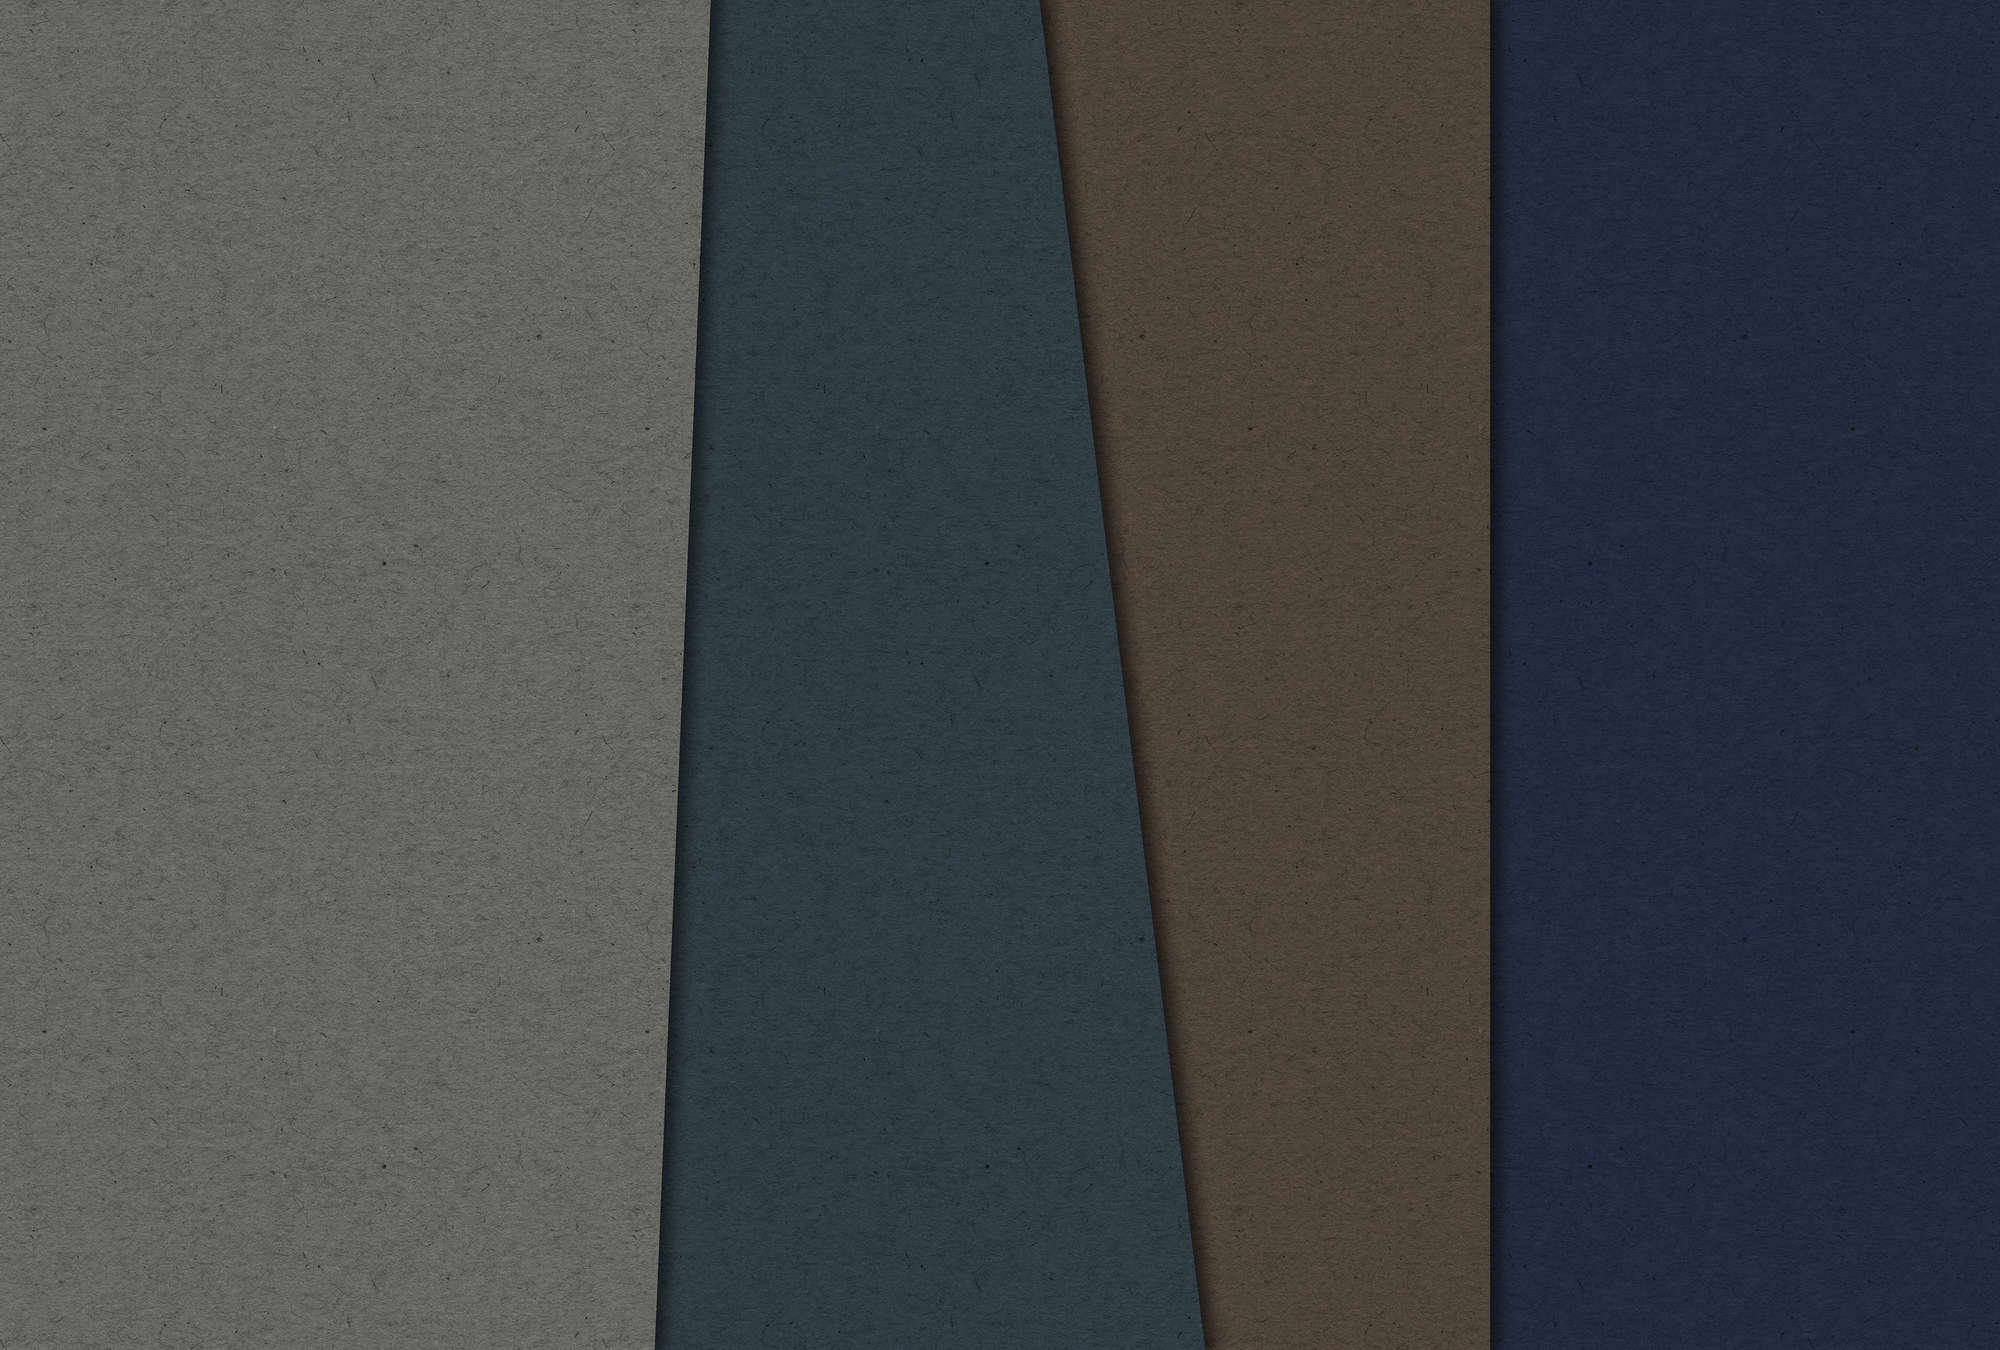             Layered Cardboard 2 - Carta da parati fotografica con struttura in cartone e campi di colore scuro - Blu, Marrone | Vello liscio opaco
        